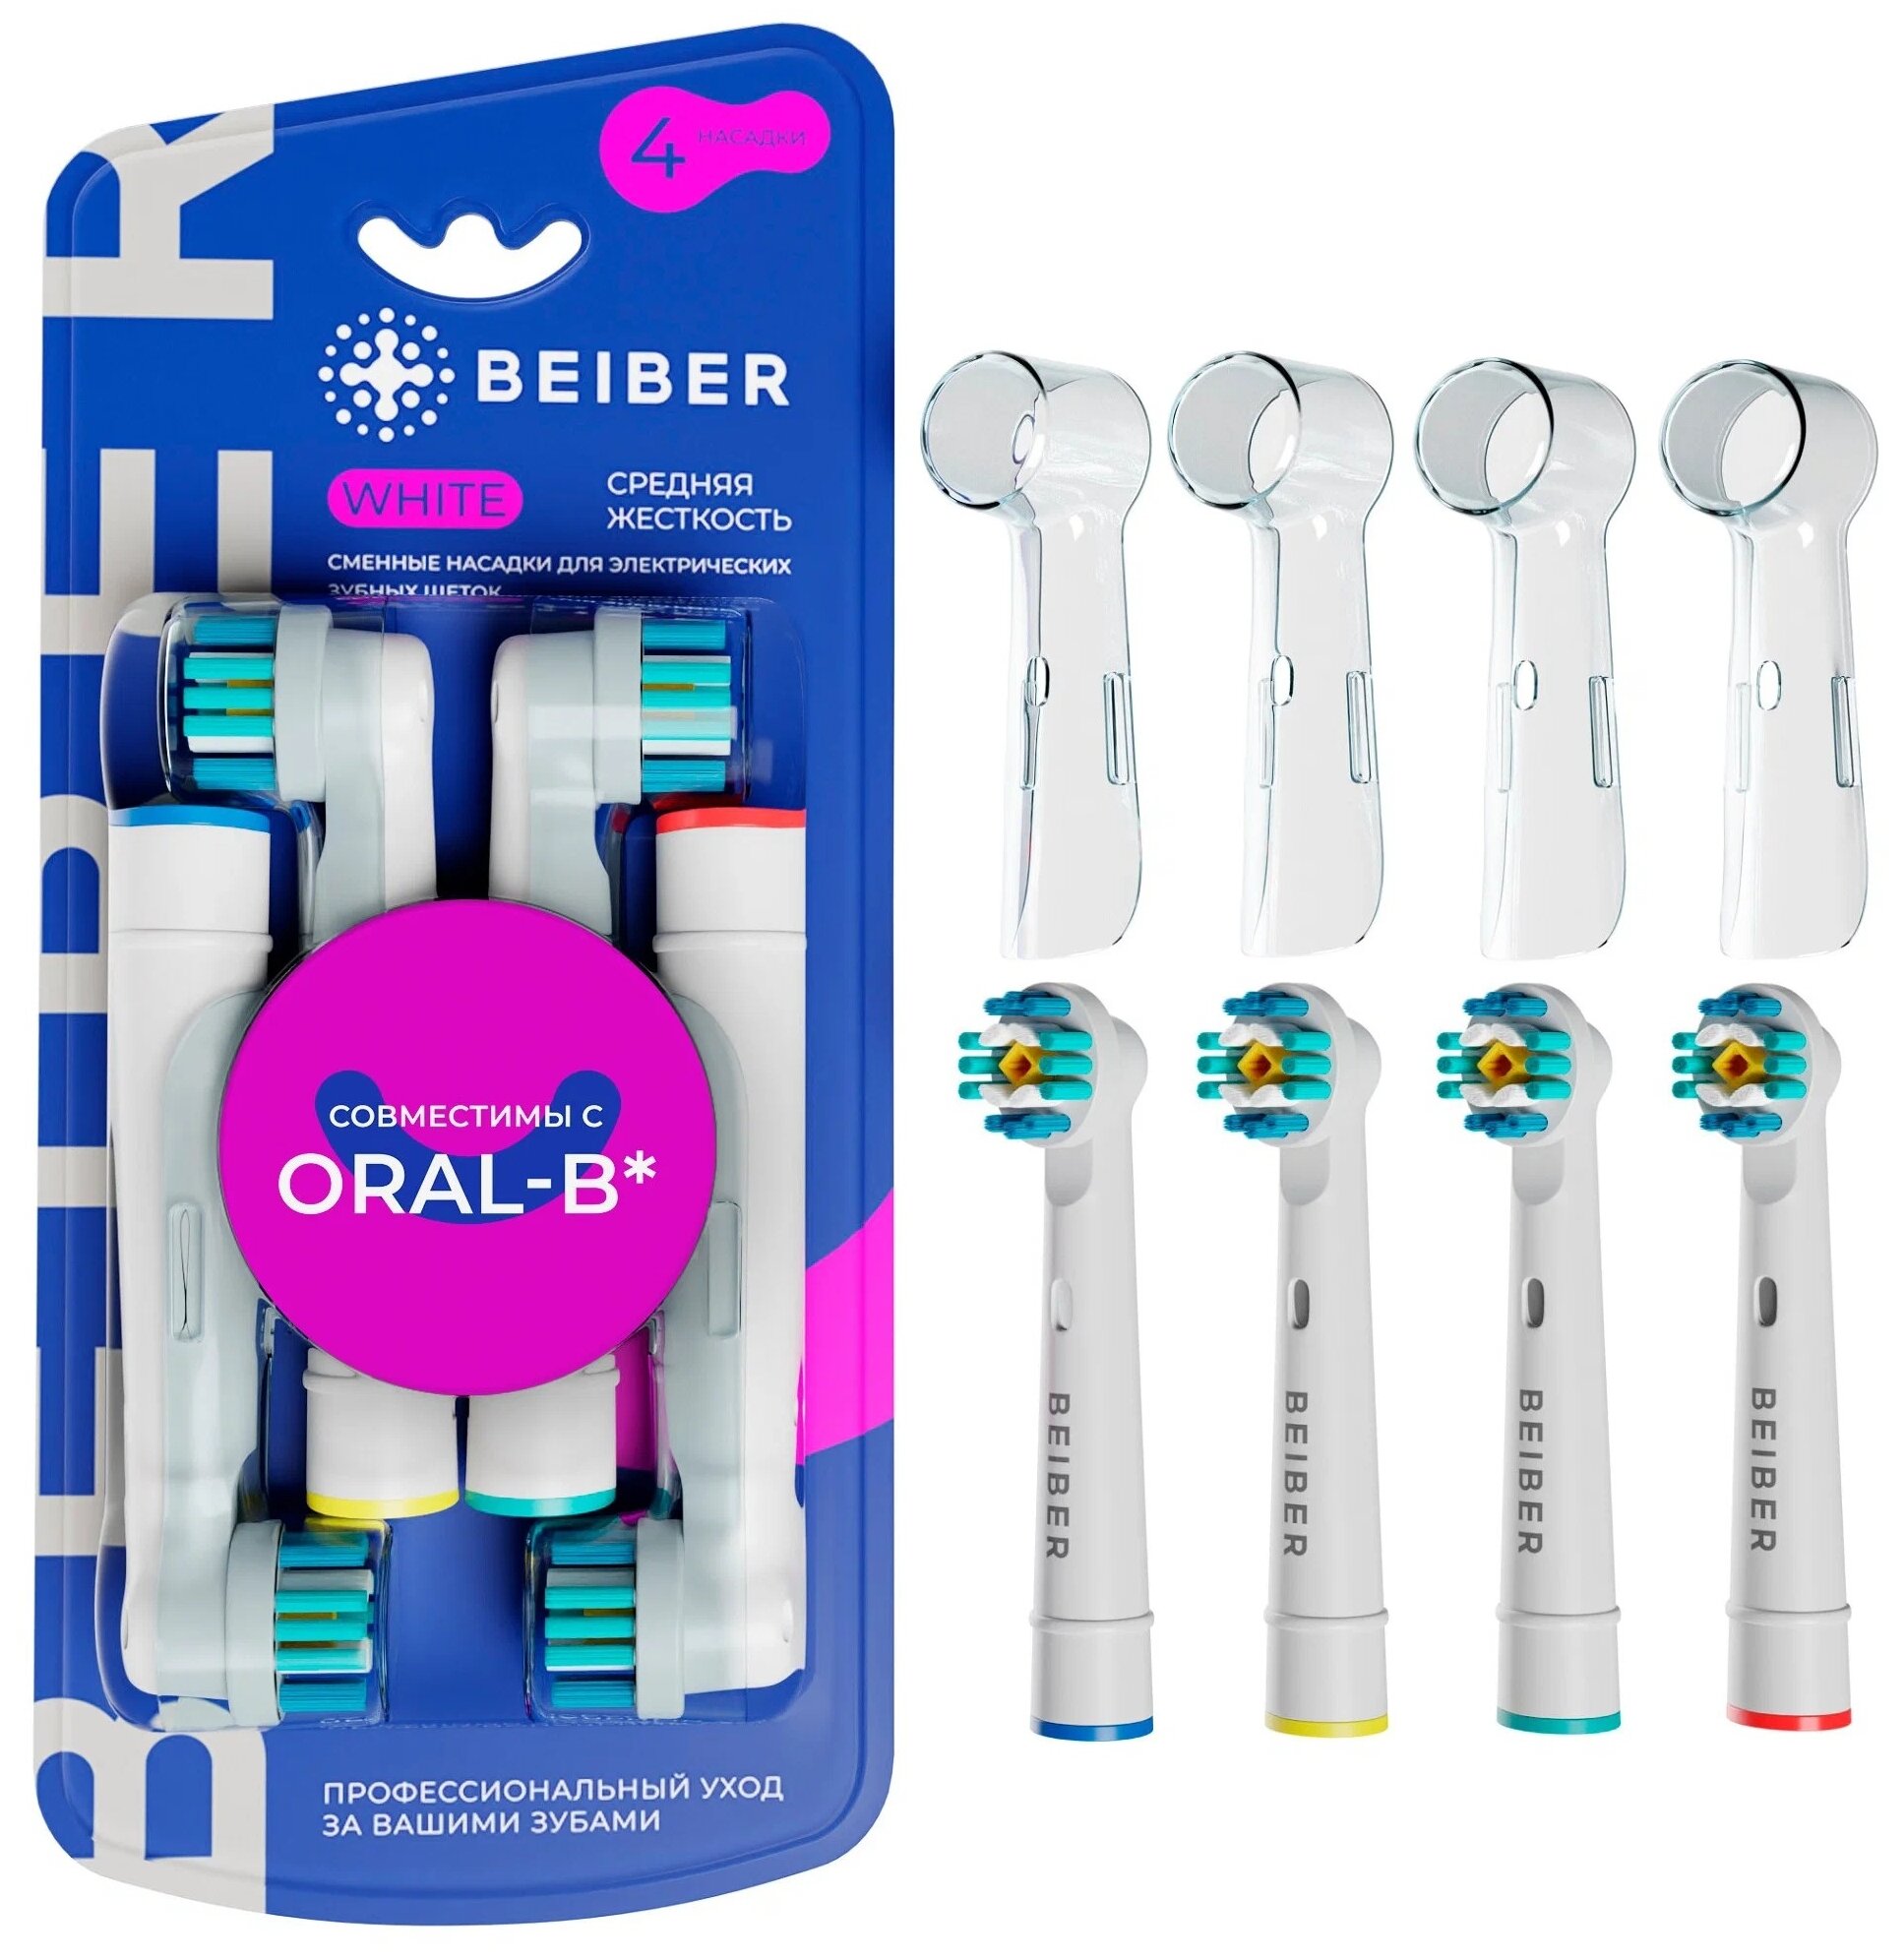 Насадки BEIBER совместимые с Oral-B WHITE для электрических зубных щеток 4 шт. - фотография № 1